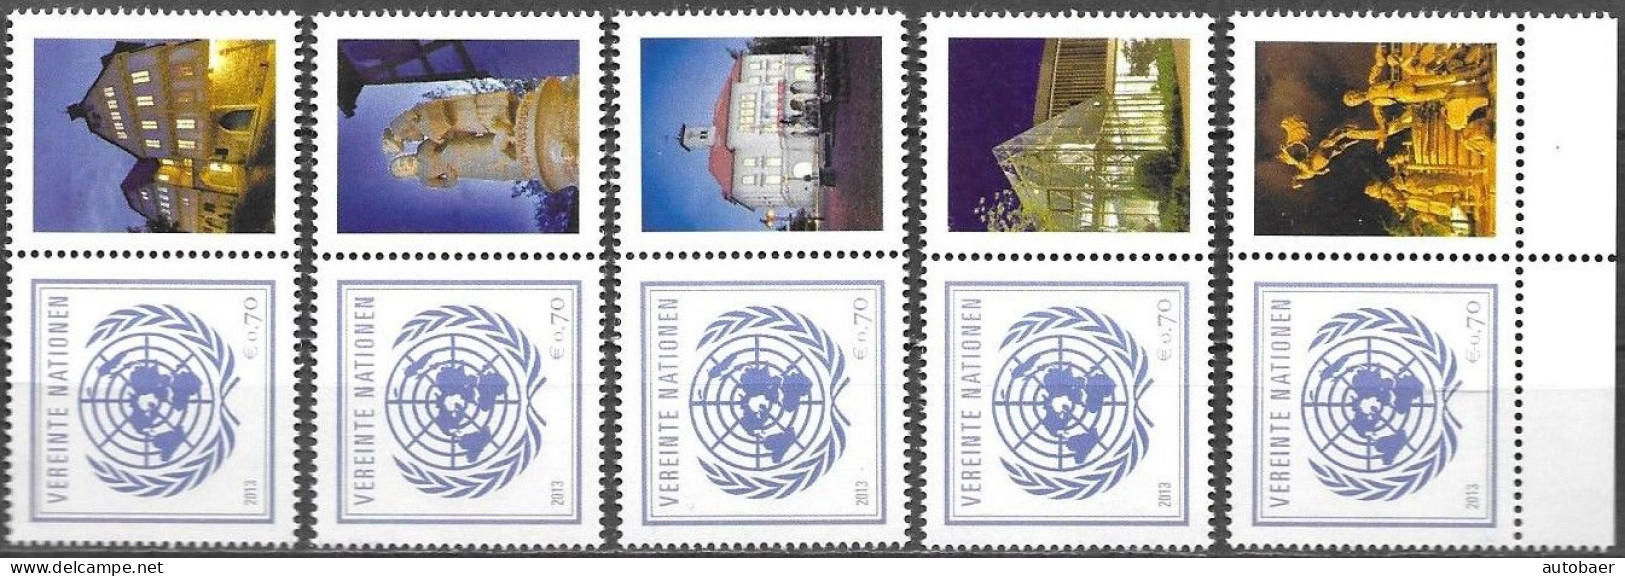 United Nations UNO UN Vereinte Nationen Vienna Wien 2013 Stamp Fair Sindelfingen Mi. 797 X5 MNH ** Neuf - Ongebruikt